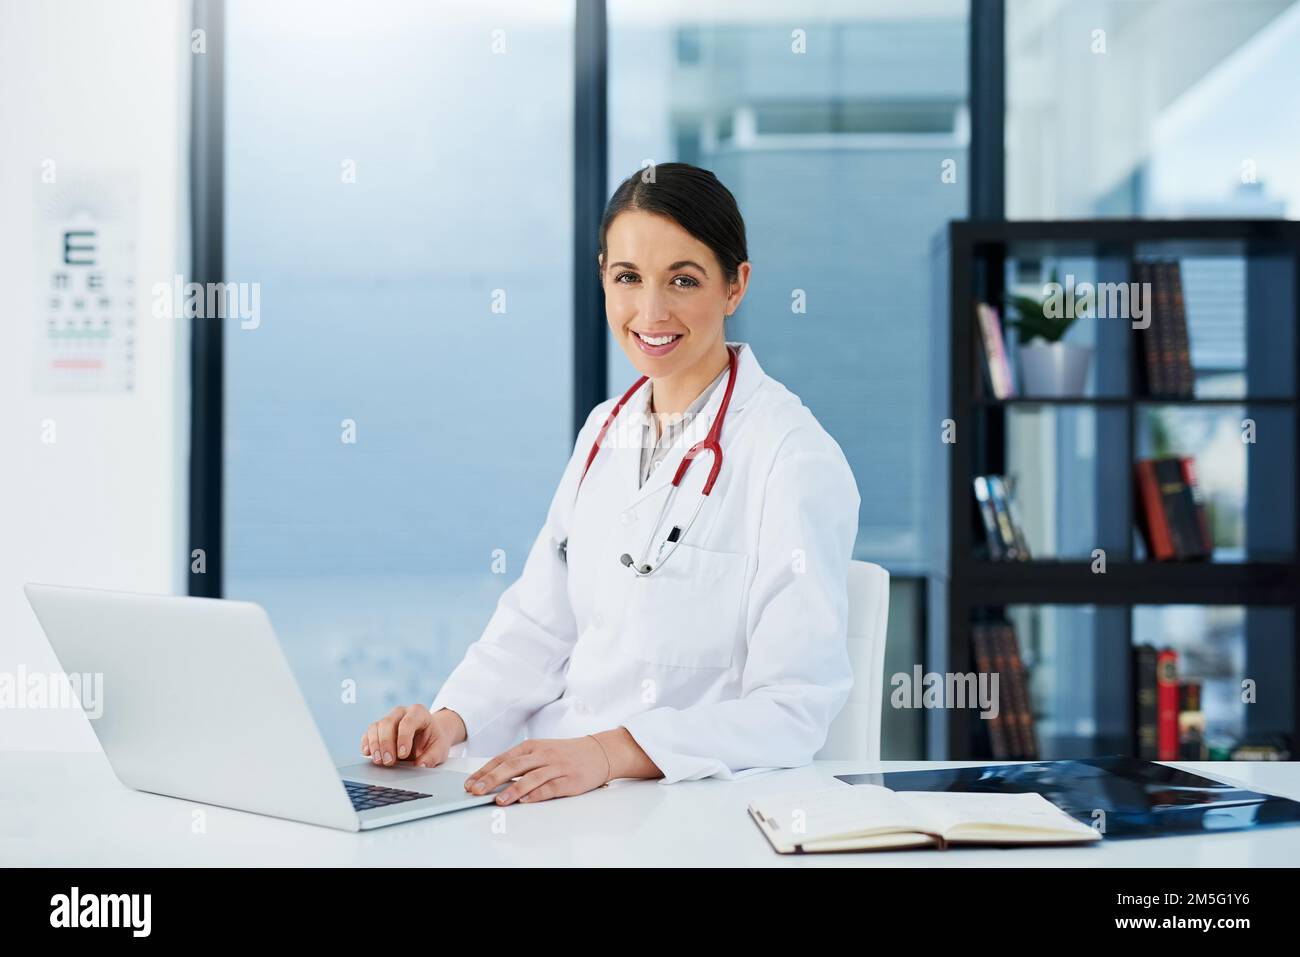 Das lächelnde Gesicht des Arztberufs. Porträt einer jungen Ärztin, die mit einem Laptop am Schreibtisch sitzt. Stockfoto